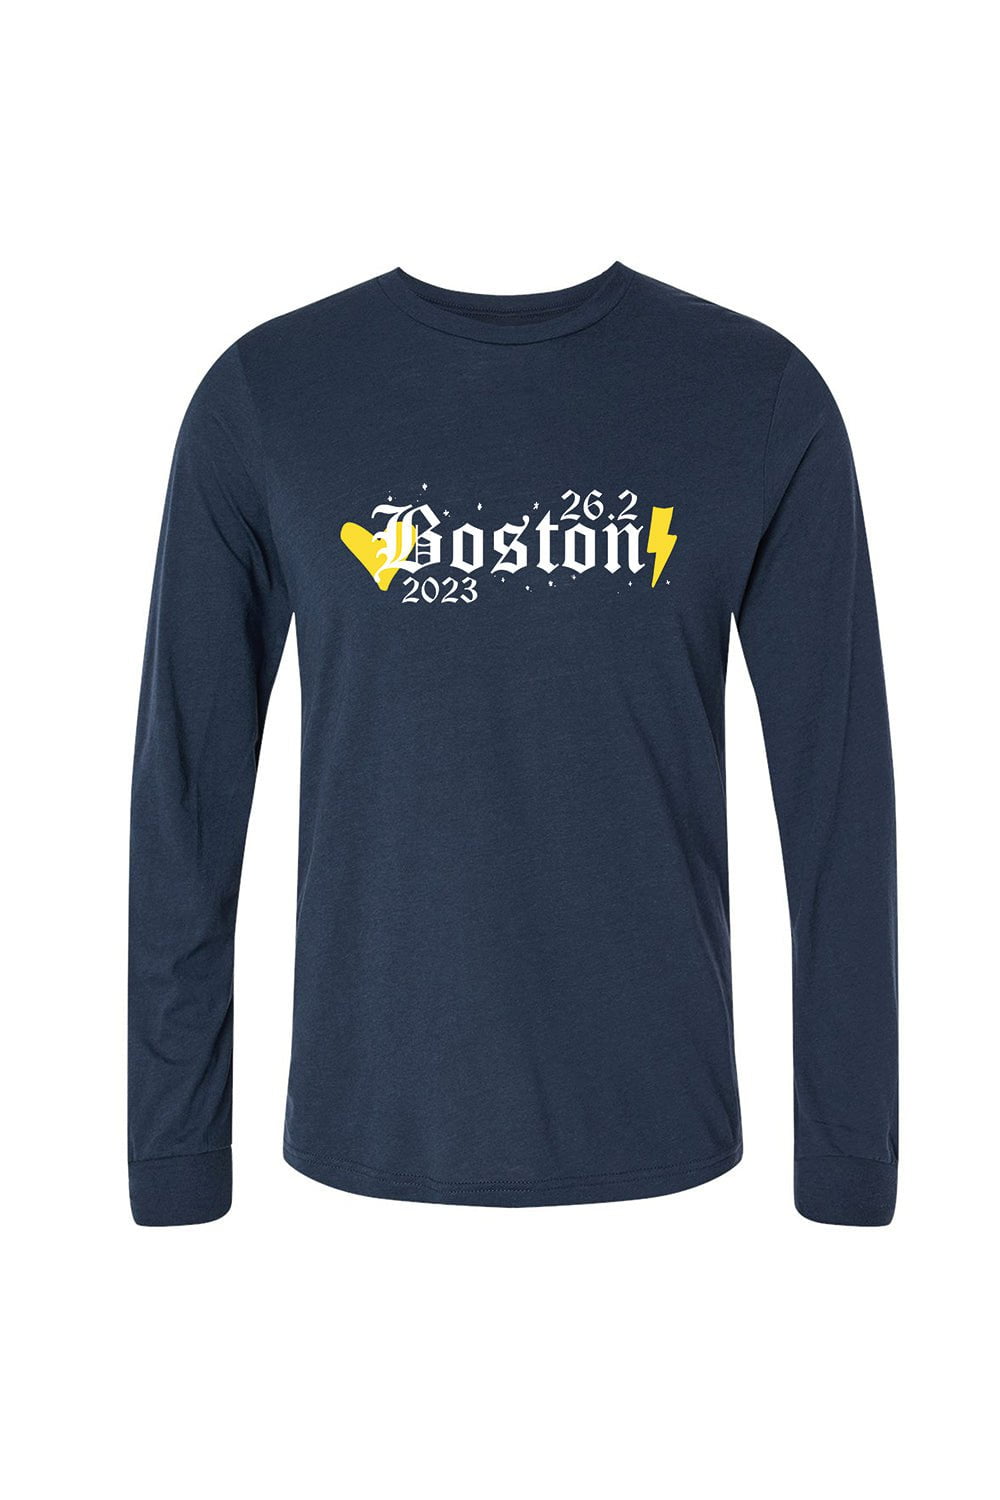 Boston marathon apparel 